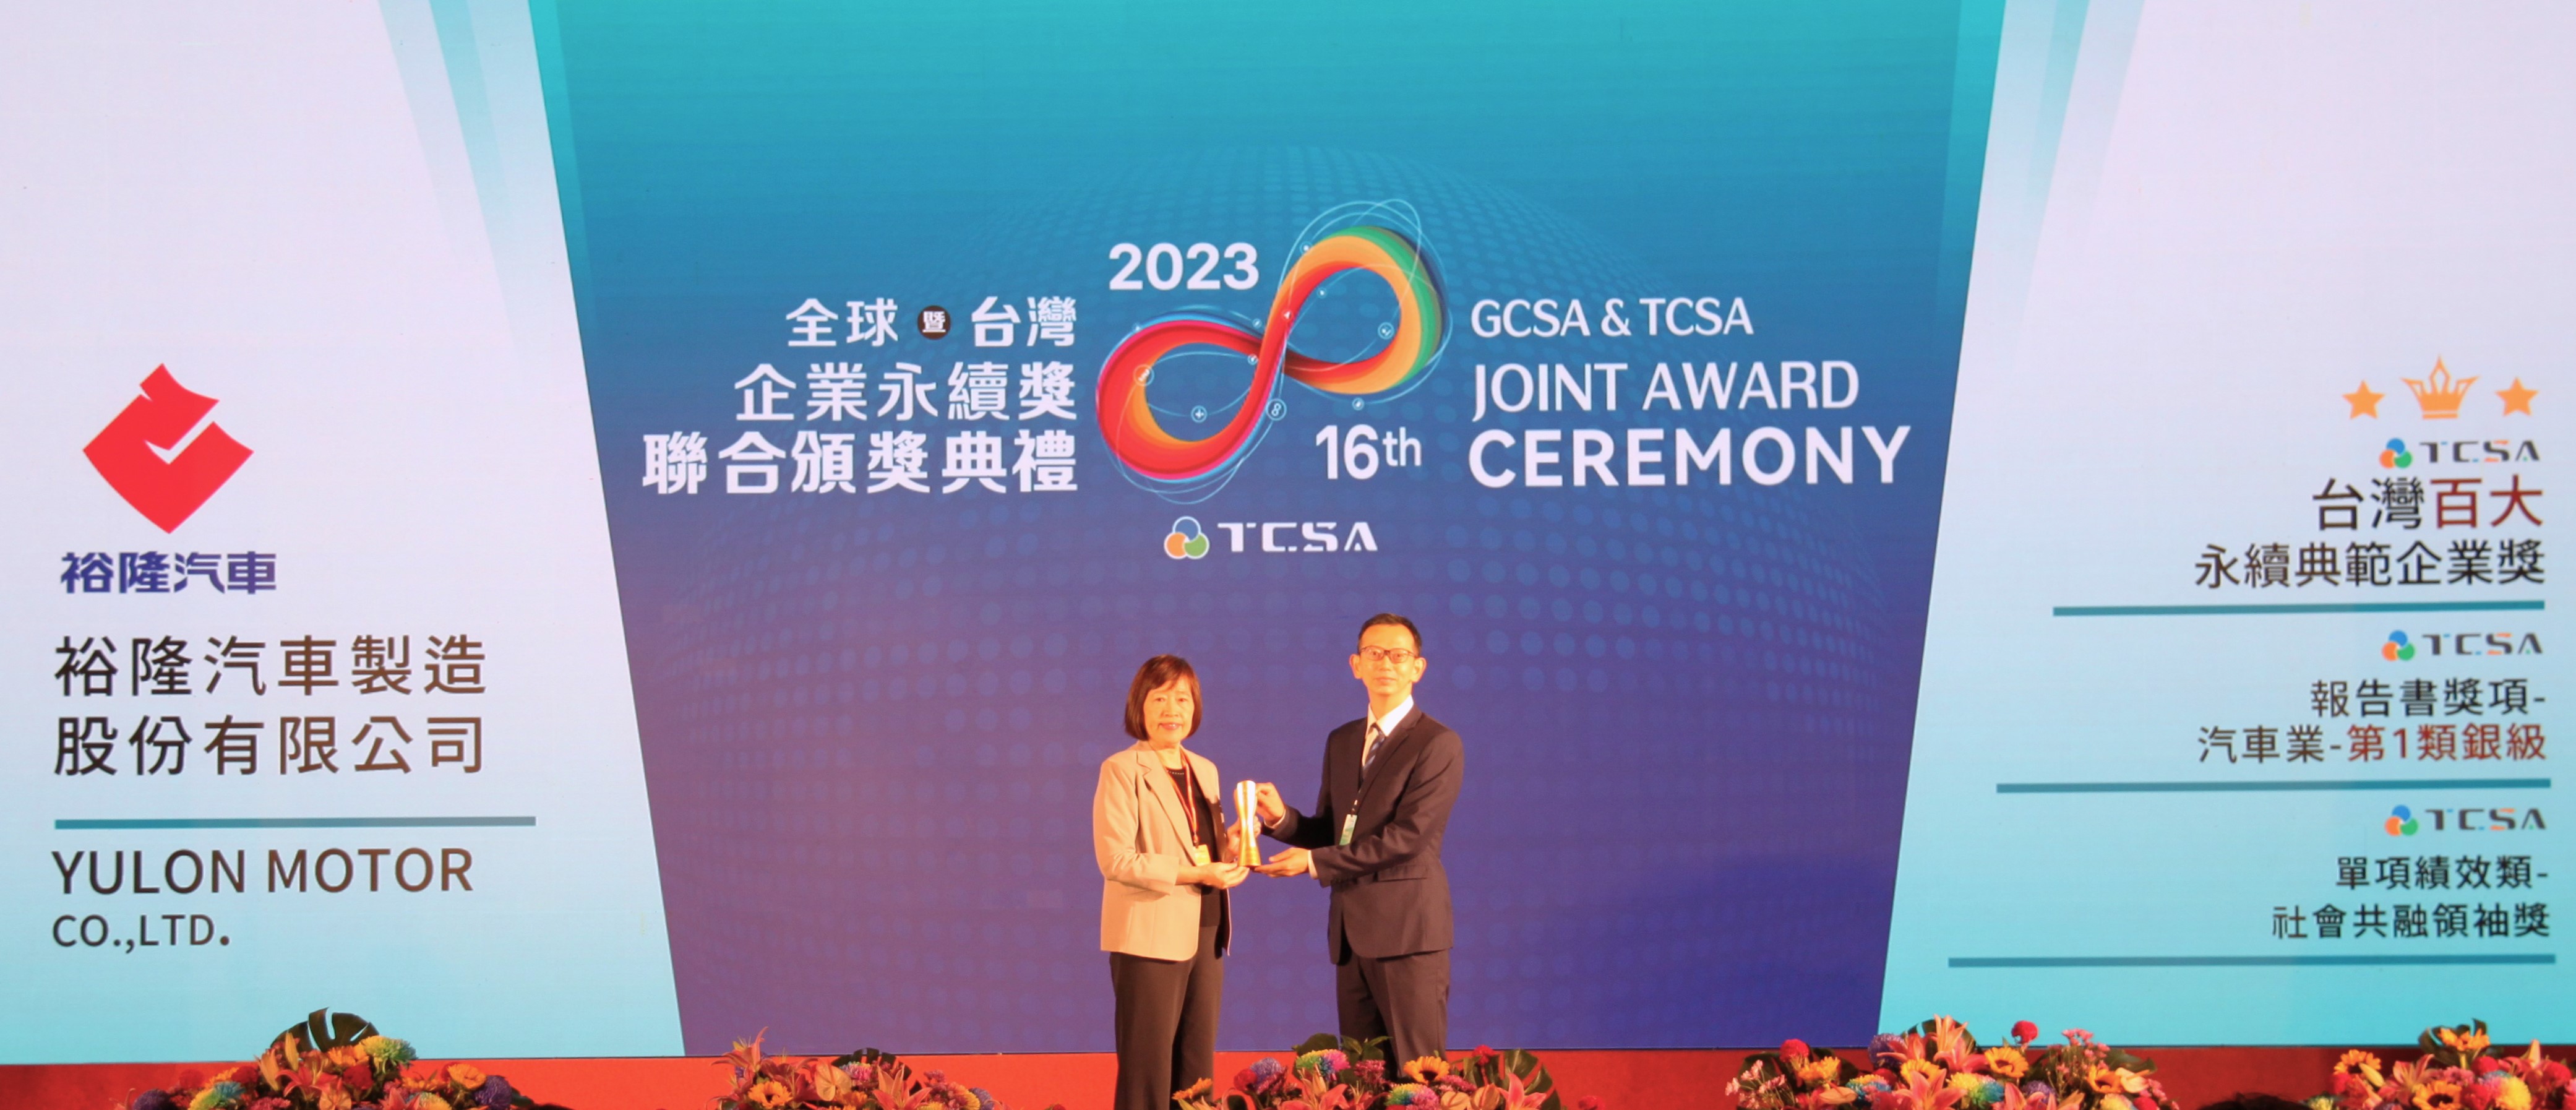 裕隆汽車積極落實ESG三面向2023榮獲TCSA台灣企業永續獎三項獎